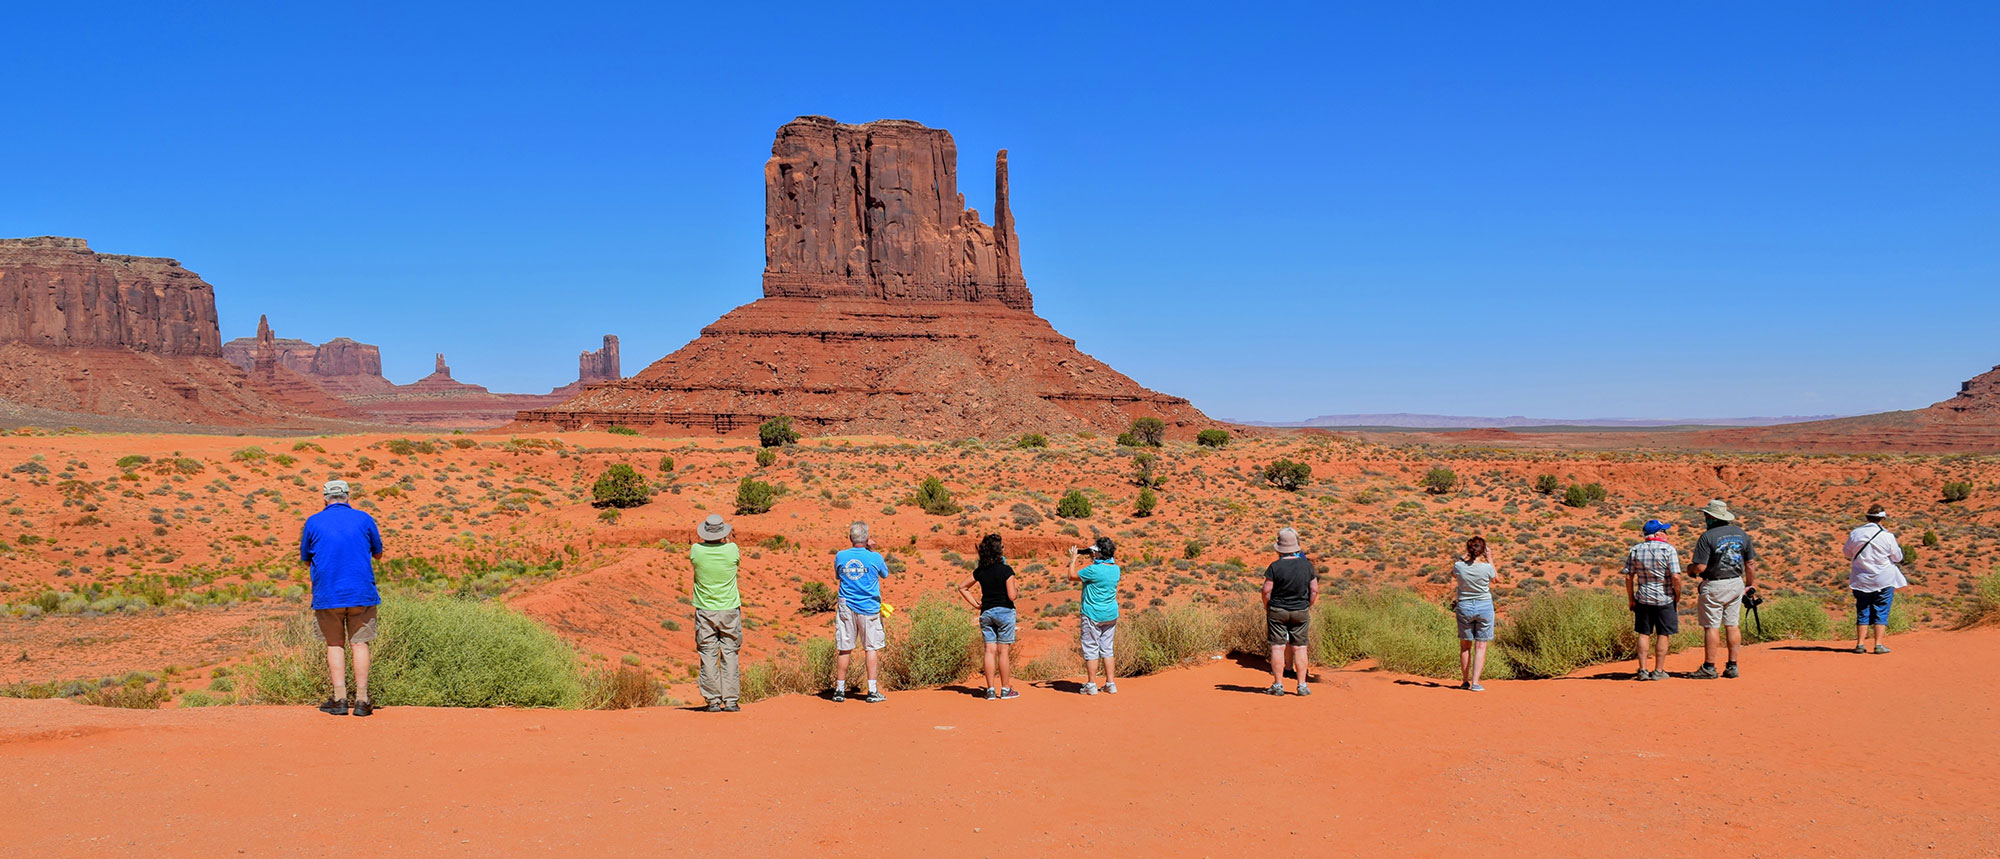 Tempat Wisata Berikut Yang Harus Dikunjungi Ketika Berkunjung ke Arizona